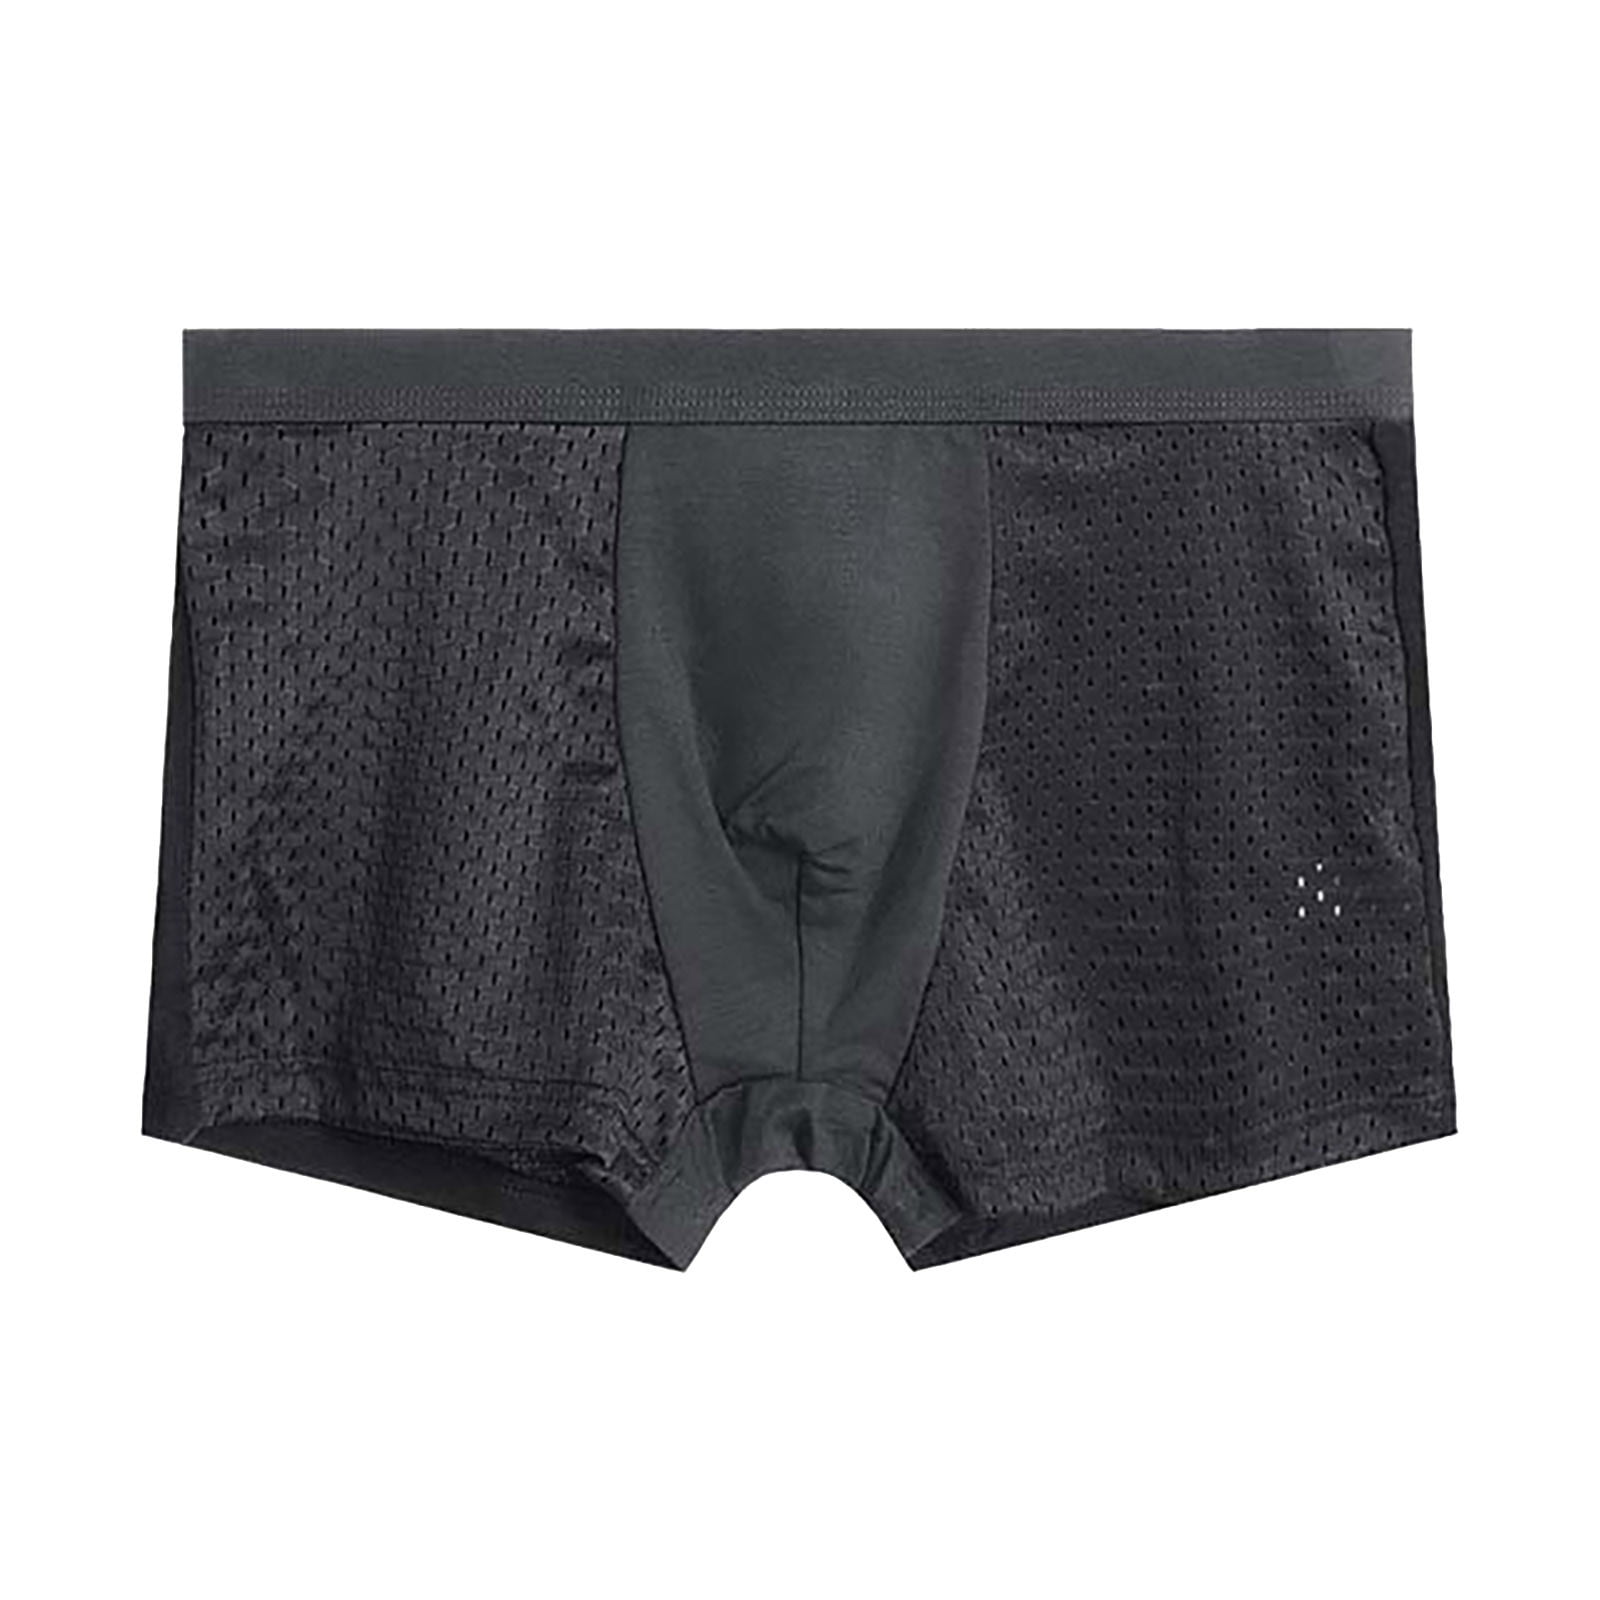 Pimfylm Mens Underwear Boxer Briefs Men's Underwear – Low Rise Briefs ...